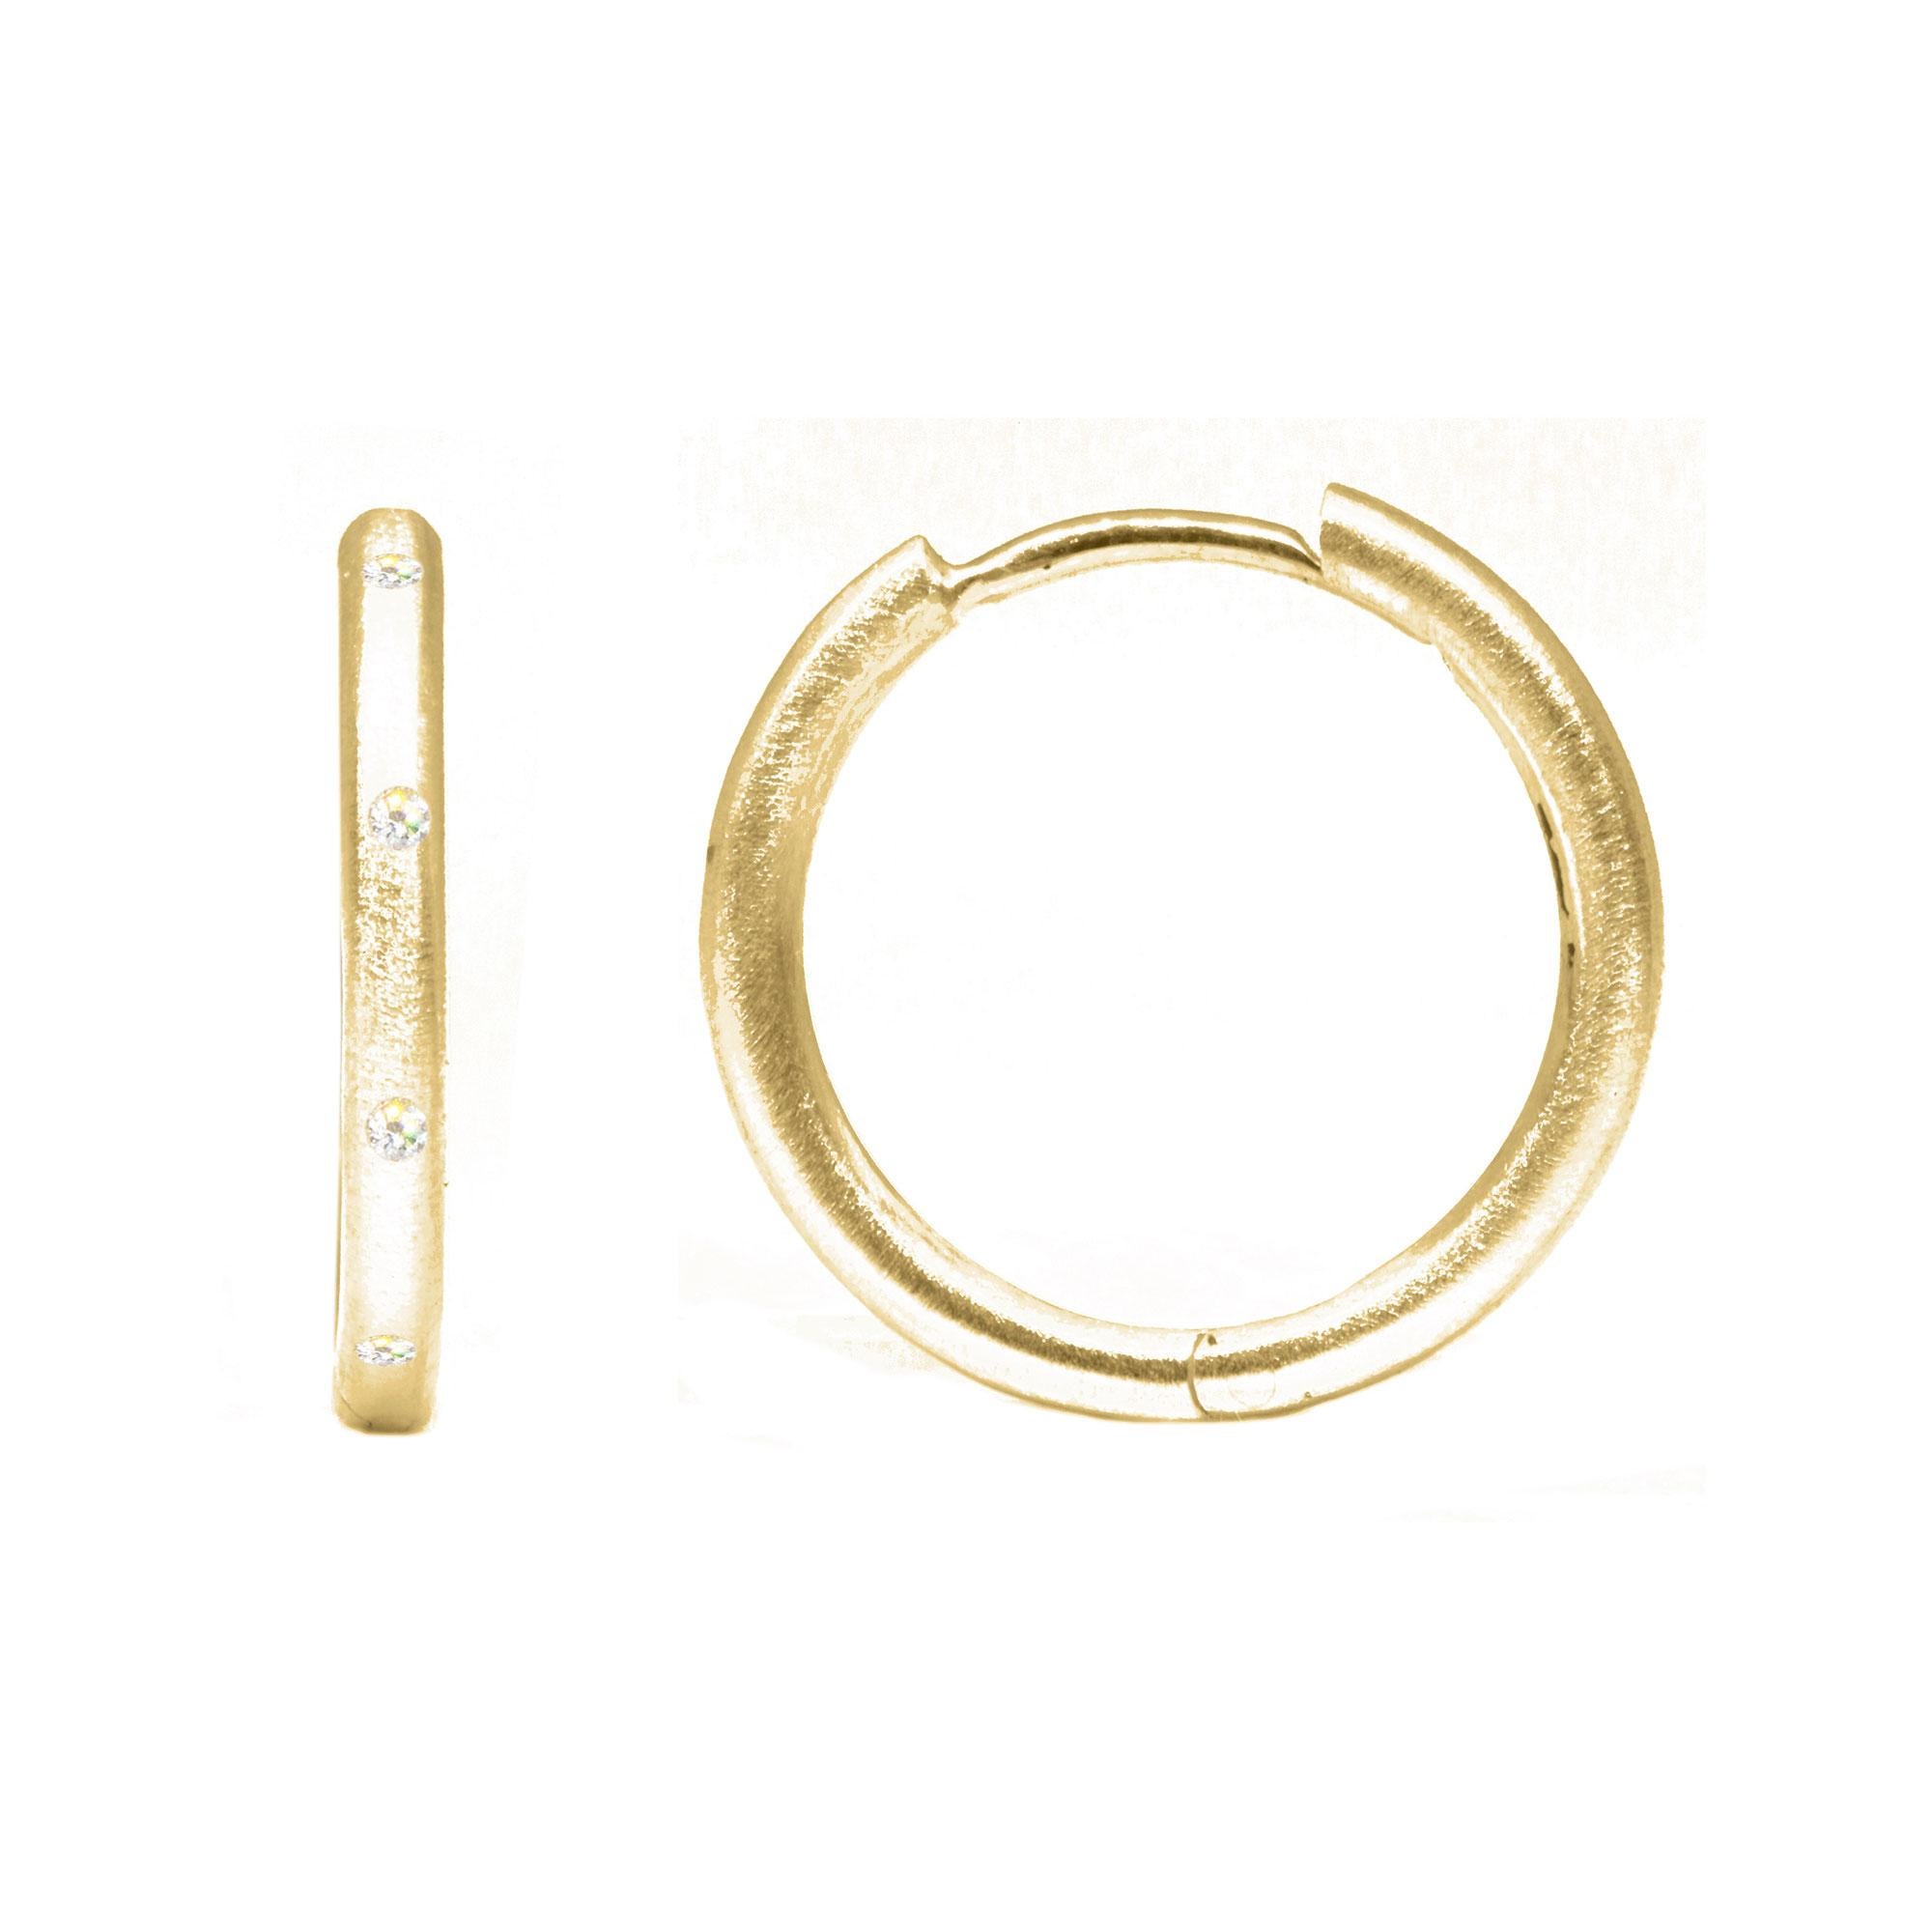 Les anneaux en or 18K Ellie 18 mm sont ornés de diamants provenant de sources responsables. Associées aux breloques en pierre précieuse de votre choix, elles complètent n'importe quel ensemble tout en affichant une élégance subtile.

Détails
Métal :